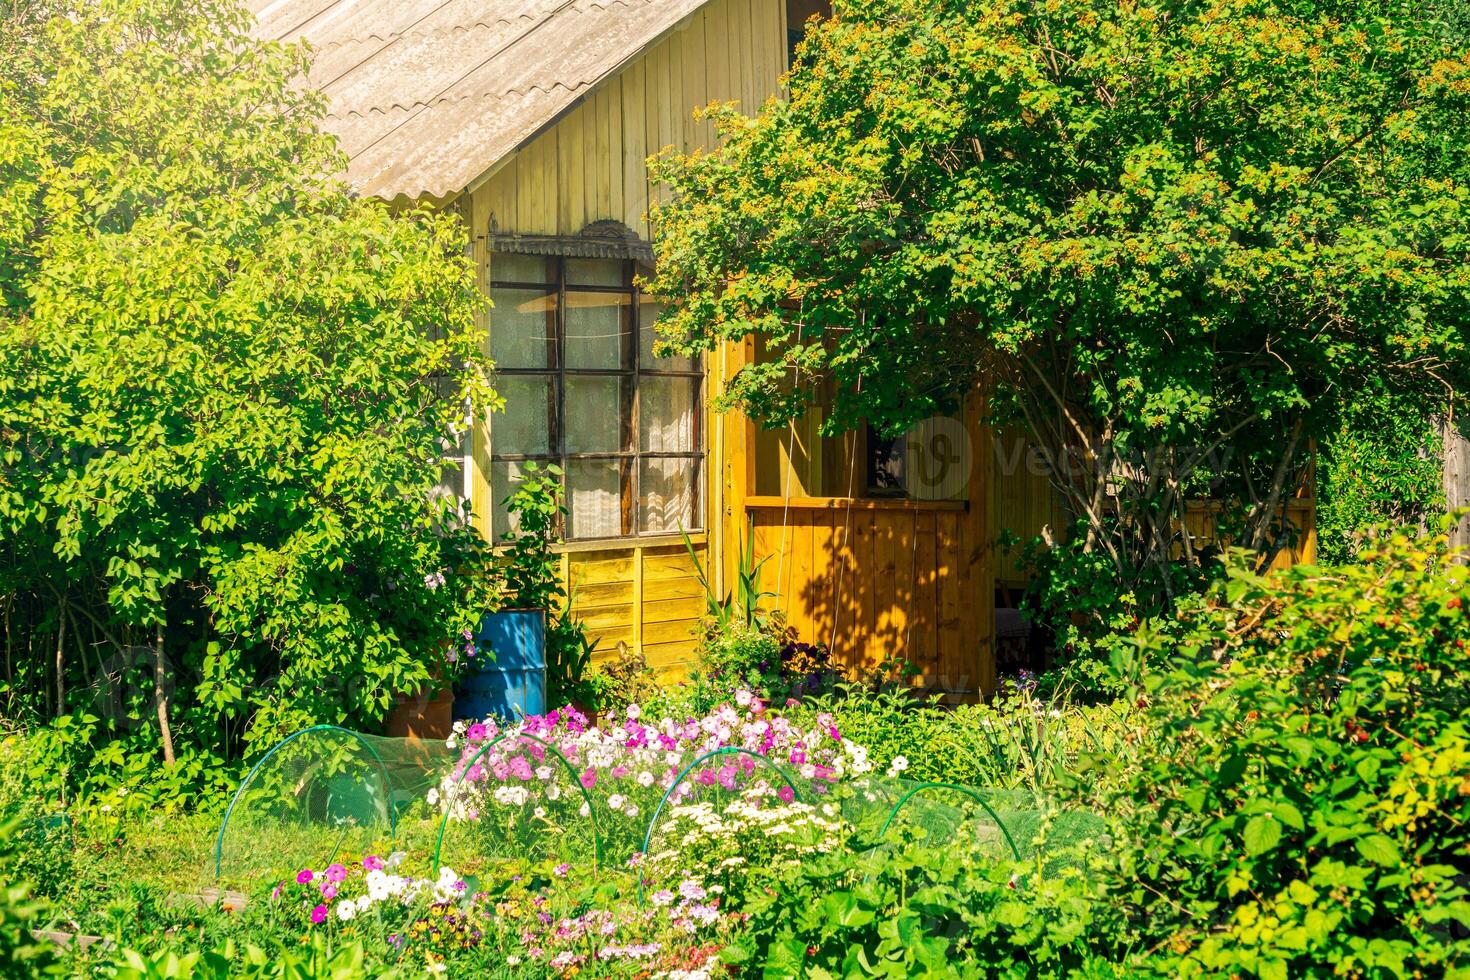 Vila casa com jardim em uma ensolarado verão dia foto